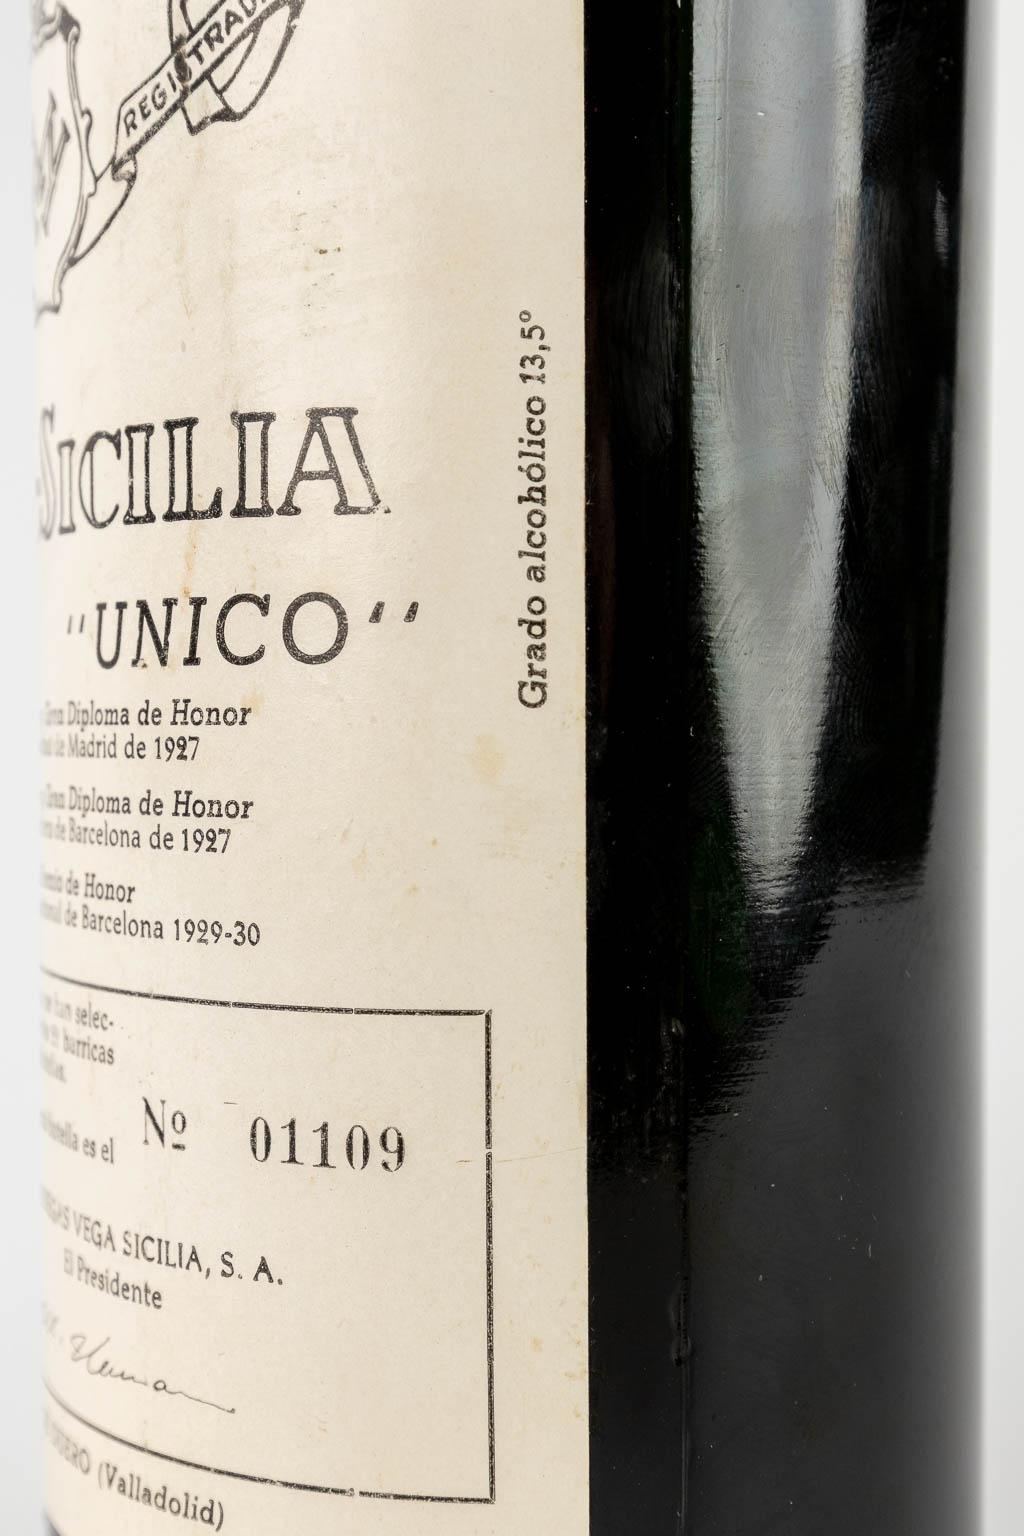 A bottle of Vega Sicilia Reserva Special Unico 1979, Bottle 1109/6160. (Vintages 